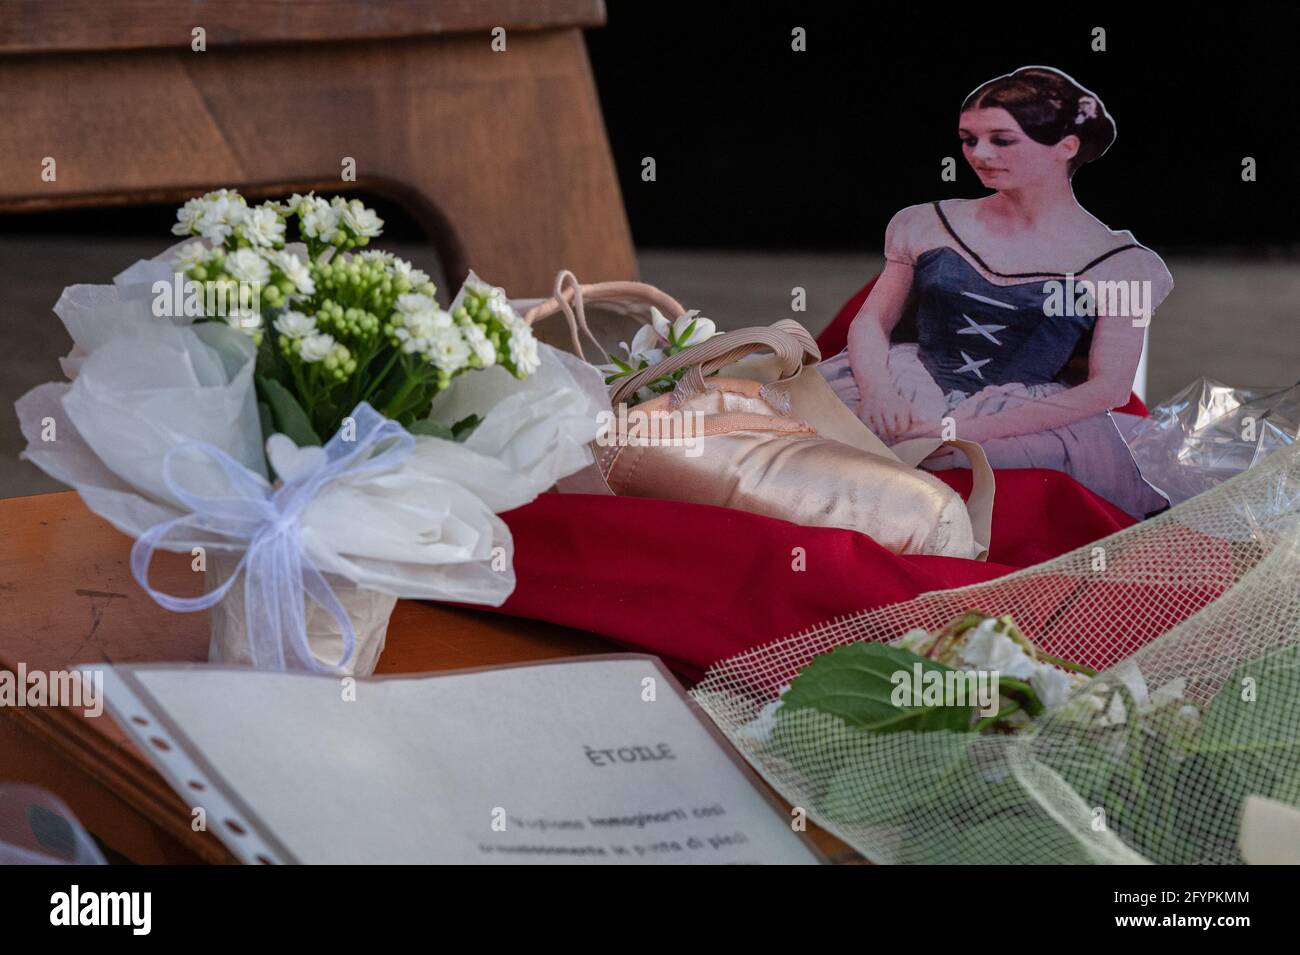 Roma, Italia 29/05/2021: Messaggi, fiori e fotografie rende omaggio alla memoria di Carla Fracci nel giorno dei suoi funerali. Teatro dell'Opera di Roma. © Andrea Sabbadini Foto Stock